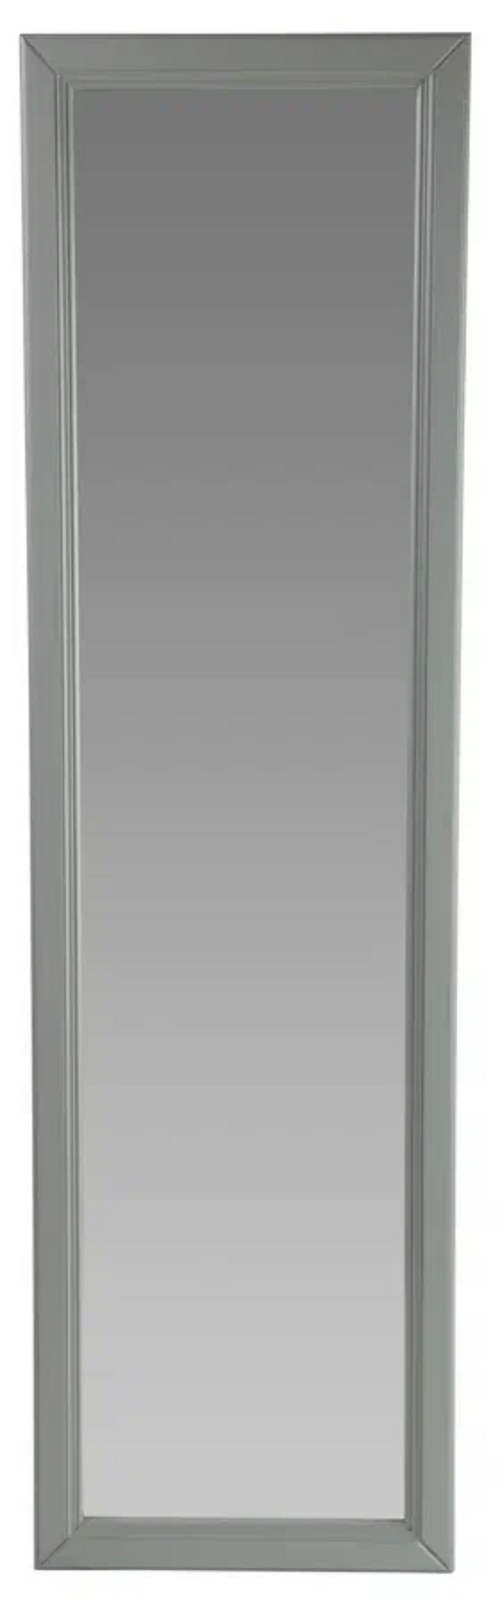 Зеркало настенное Wissar Flare (серый)